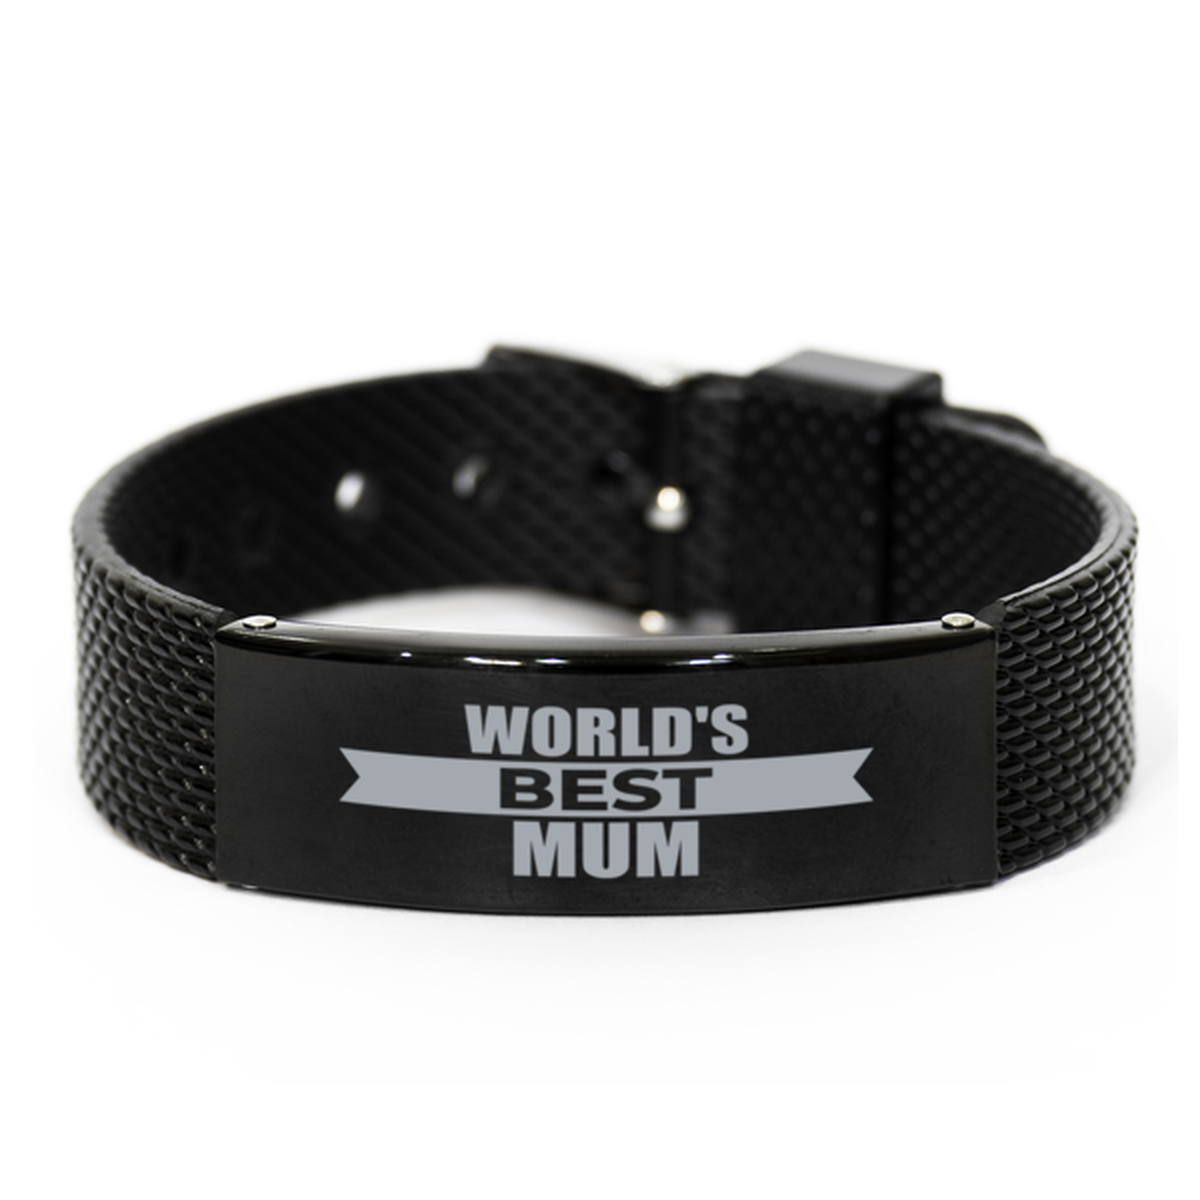 World's Best Mum Gifts, Gag Engraved Bracelet For Mum, Best Family Gifts For Women